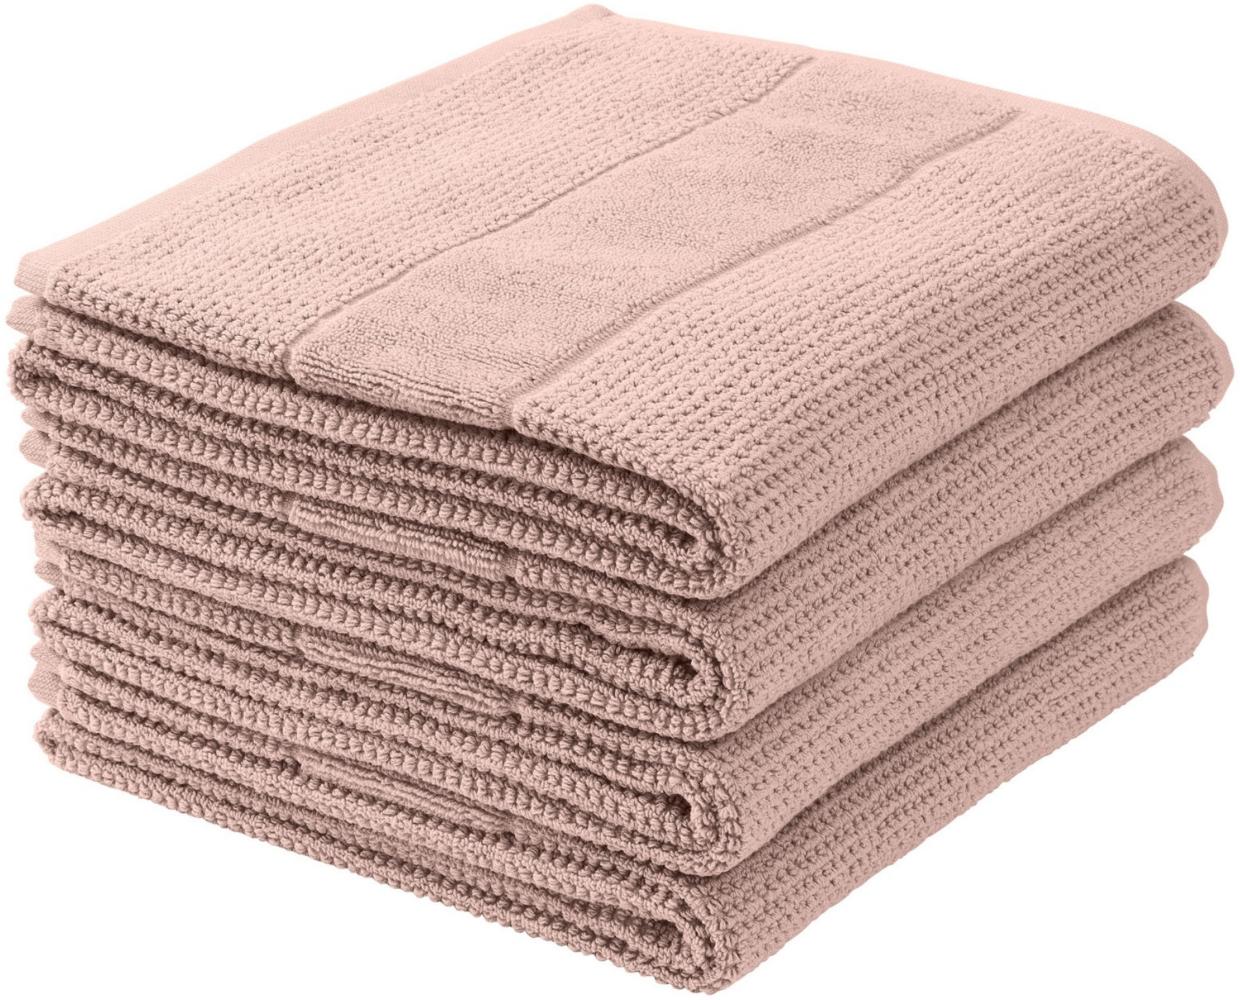 Schiesser Handtücher Turin im 4er Set aus 100% Baumwolle, nachhaltig und fair produziert, Farbe:Puderrosa, Größe:50 cm x 100 cm Bild 1